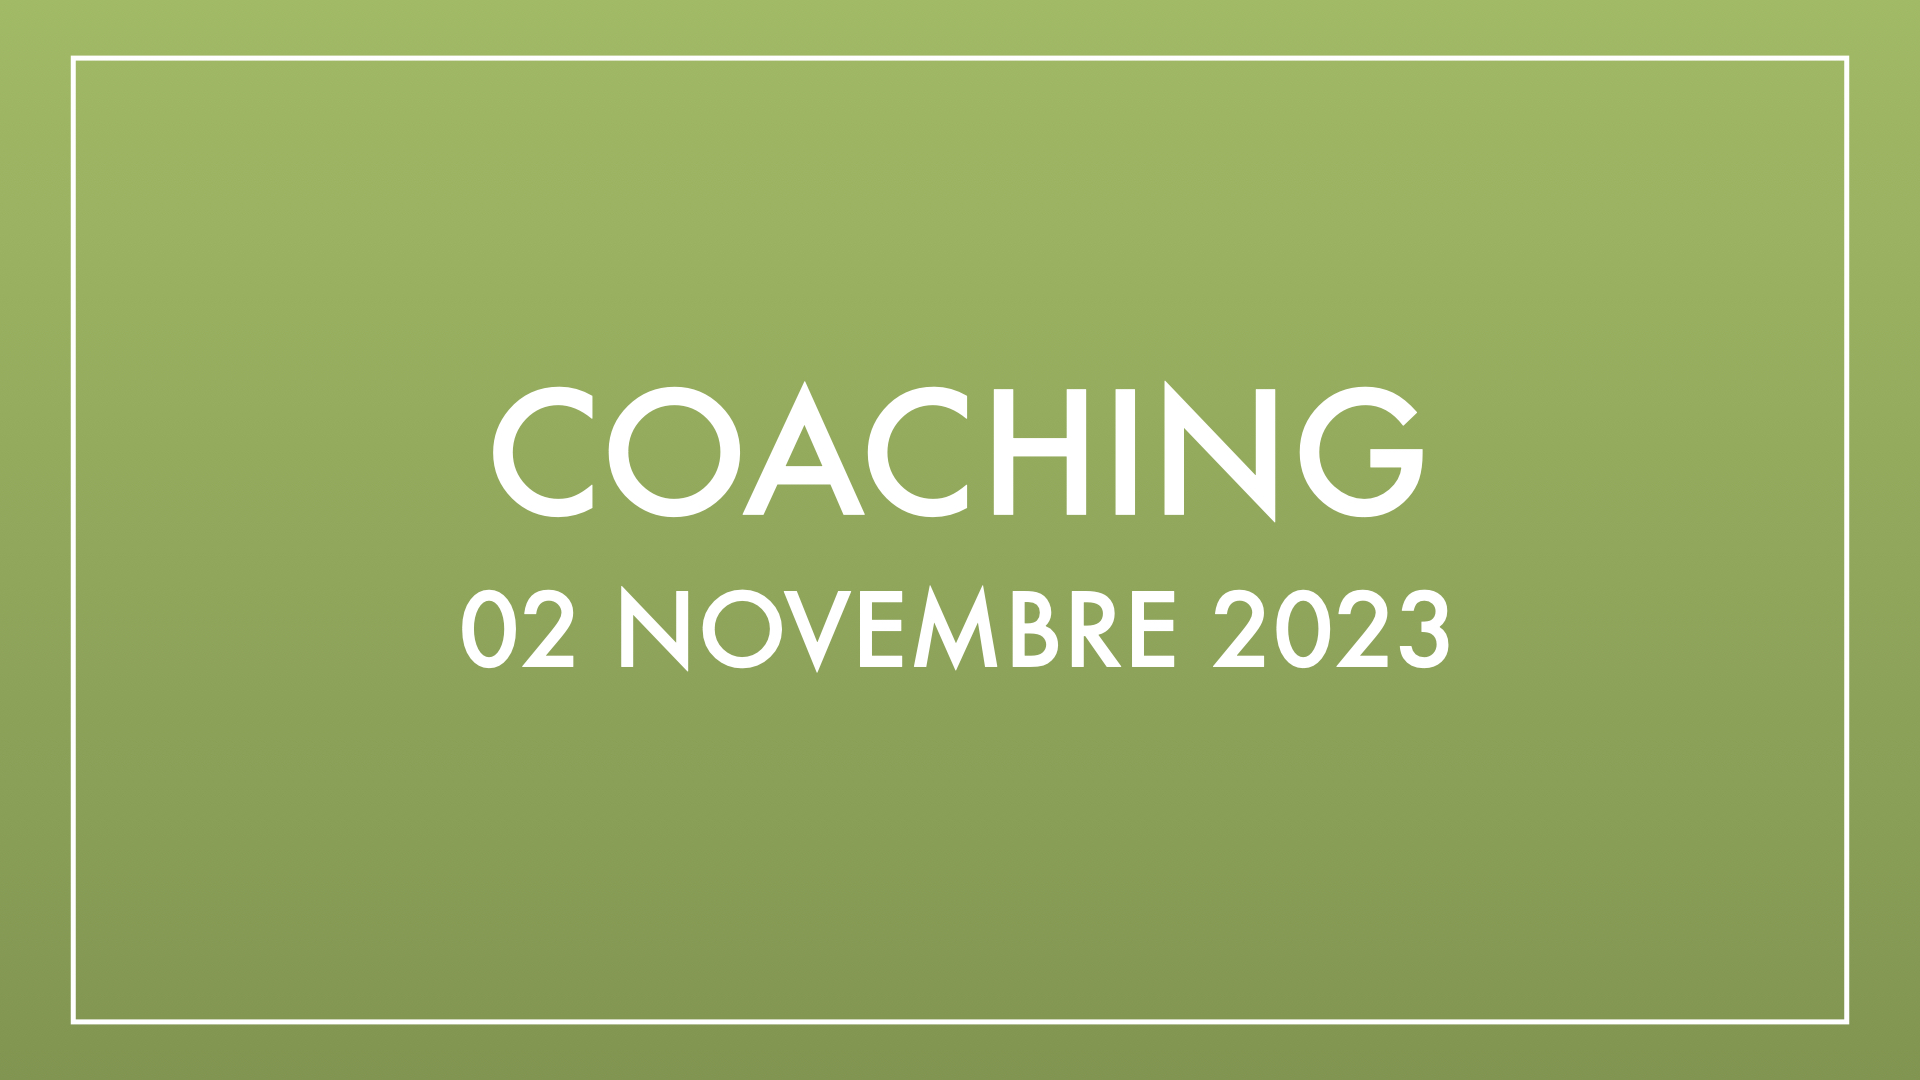 Coaching 02 novembre 2023